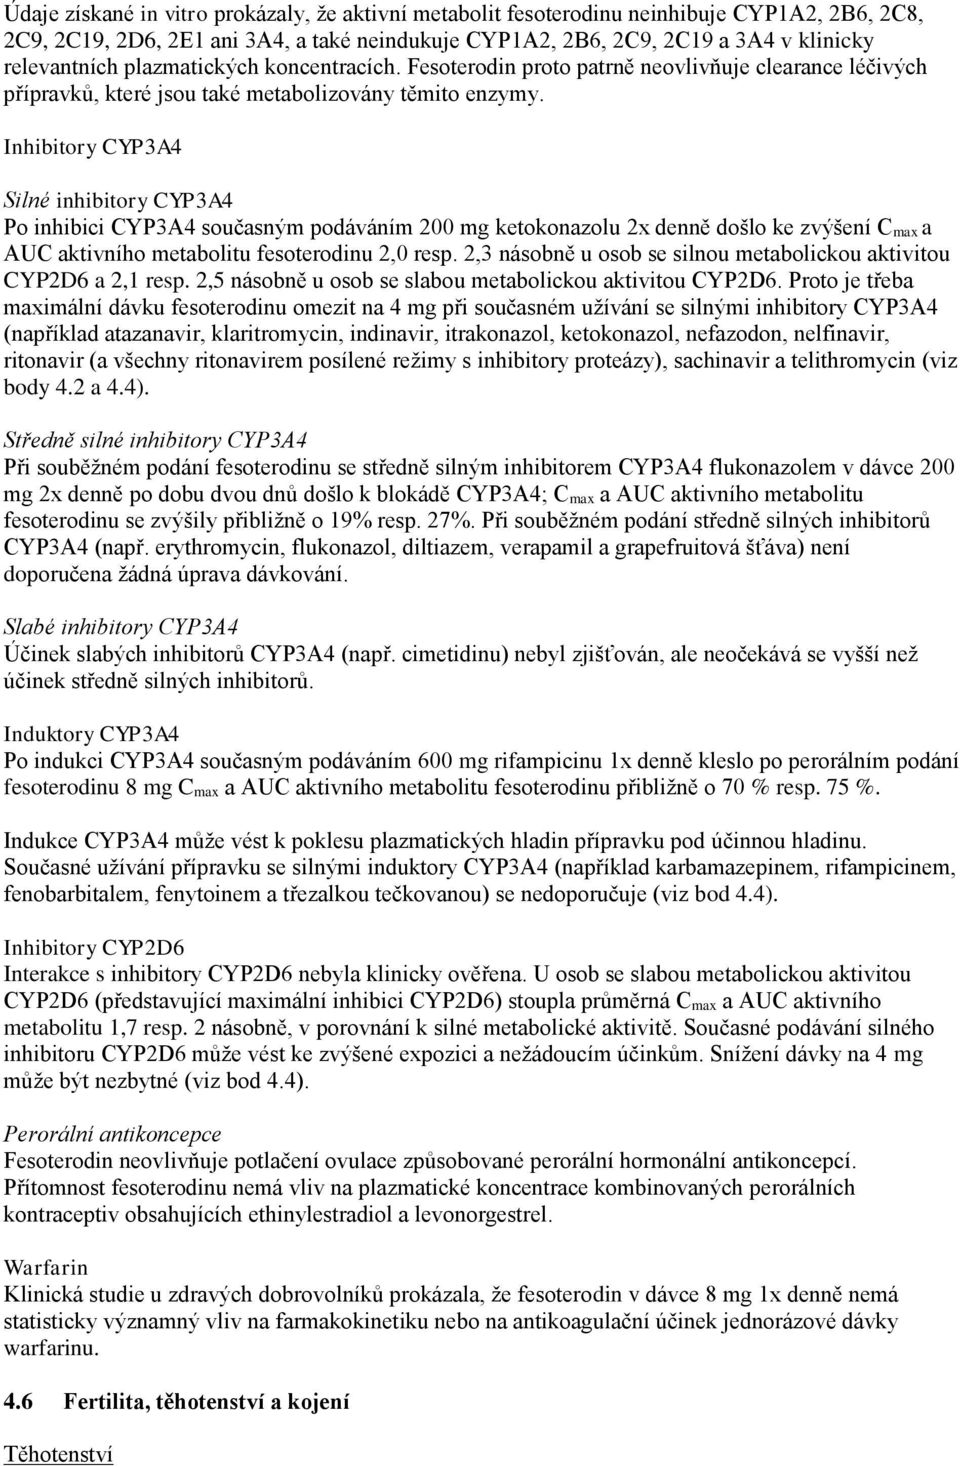 Inhibitory CYP3A4 Silné inhibitory CYP3A4 Po inhibici CYP3A4 současným podáváním 200 mg ketokonazolu 2x denně došlo ke zvýšení C max a AUC aktivního metabolitu fesoterodinu 2,0 resp.